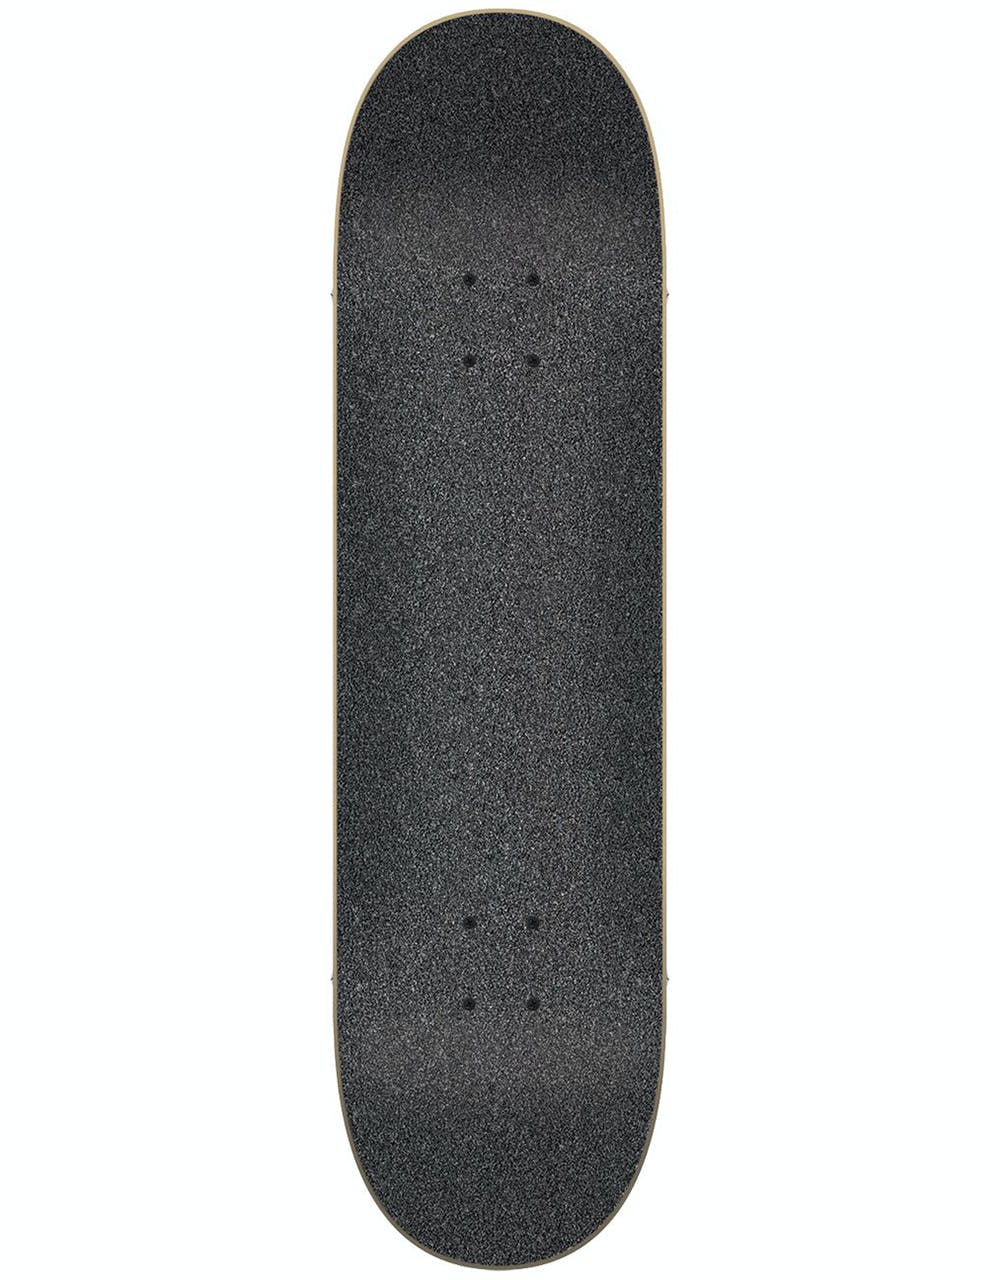 Flip HKD Tie Dye Mini Complete Skateboard - 7.25"